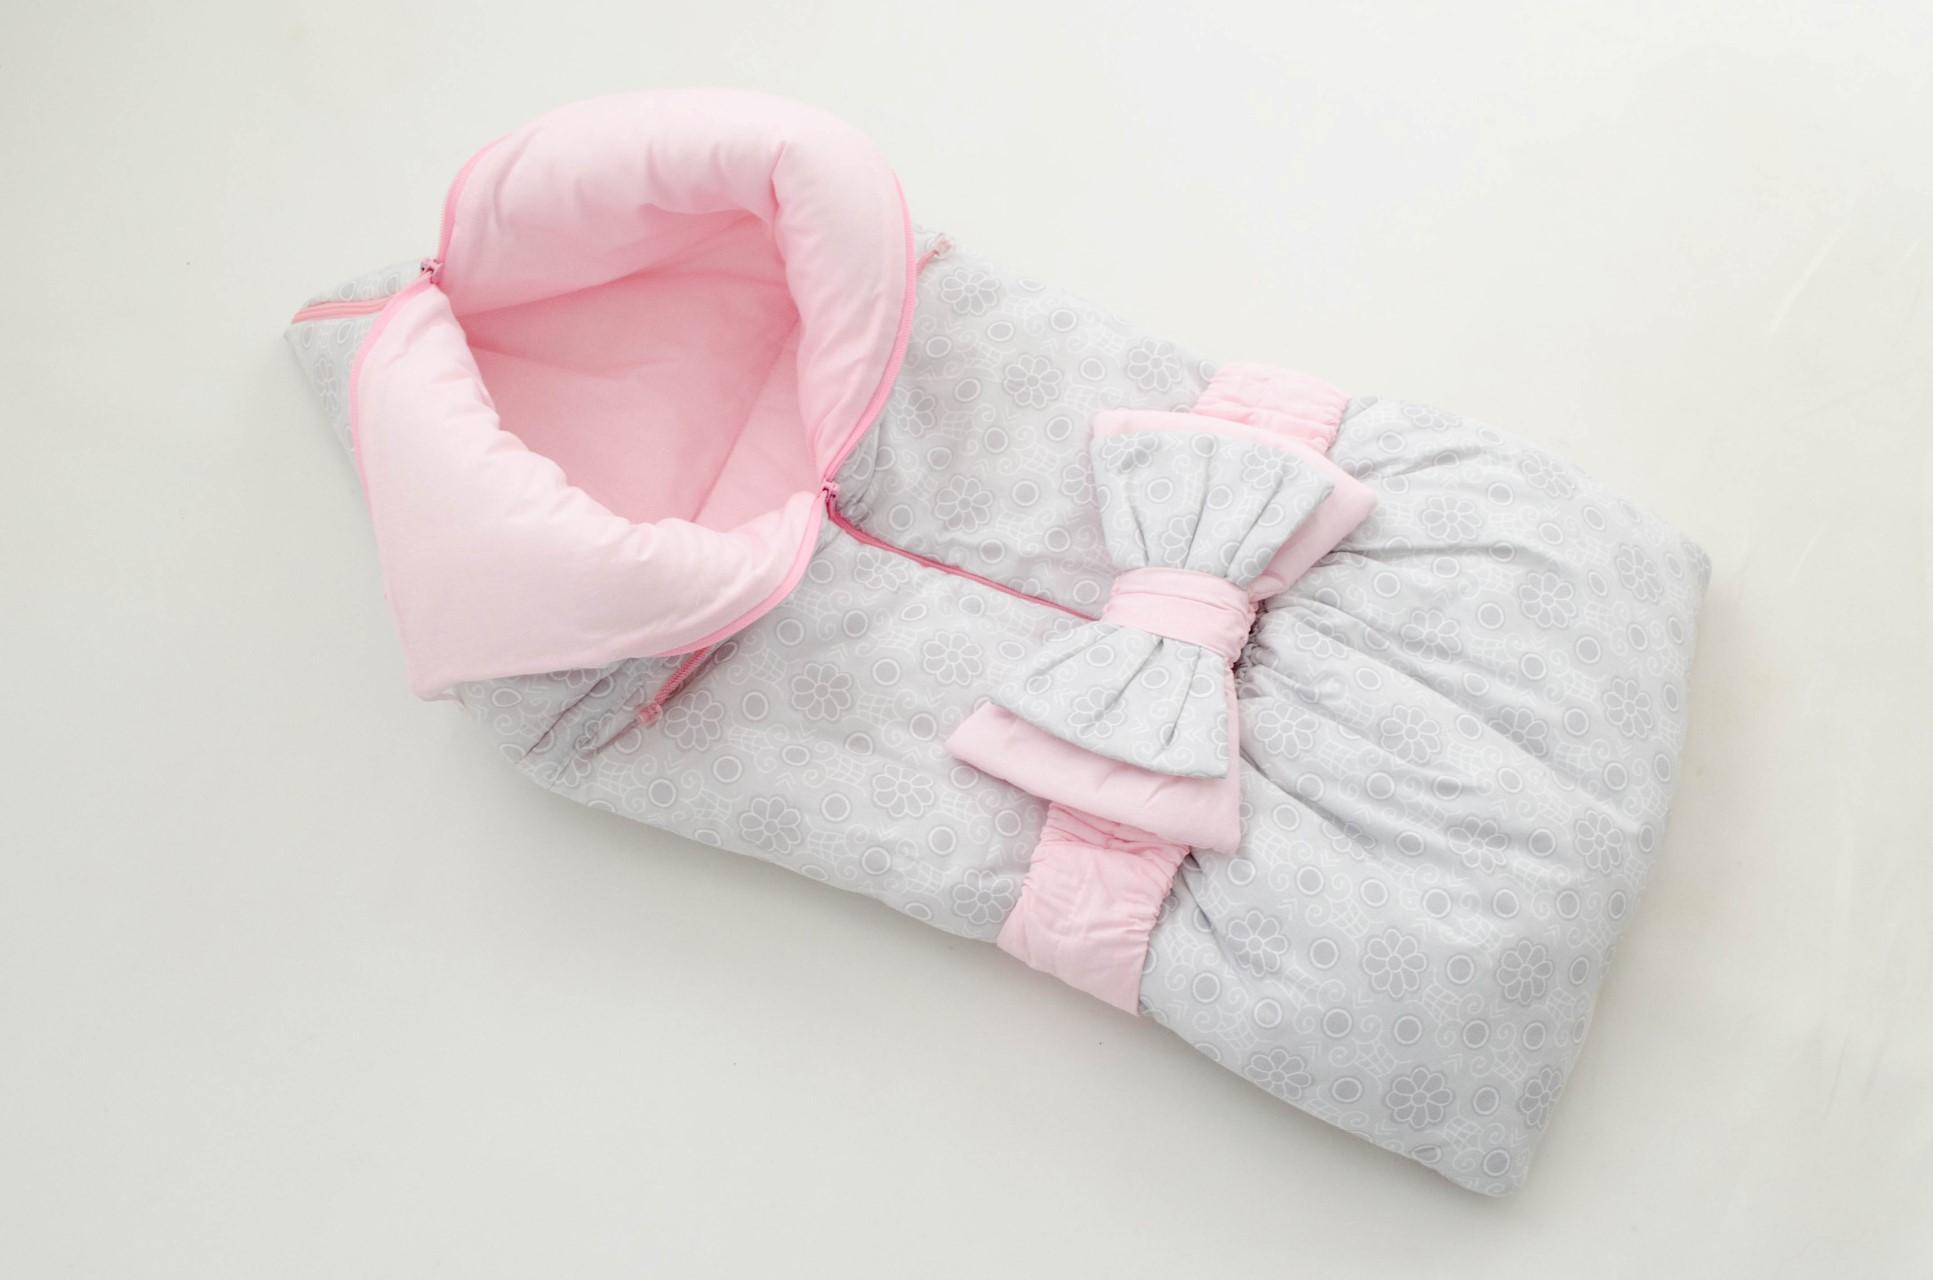 Одеяло для новорожденного какое лучше выбрать: Какое одеяло выбрать для новорожденного: предлагаем варианты